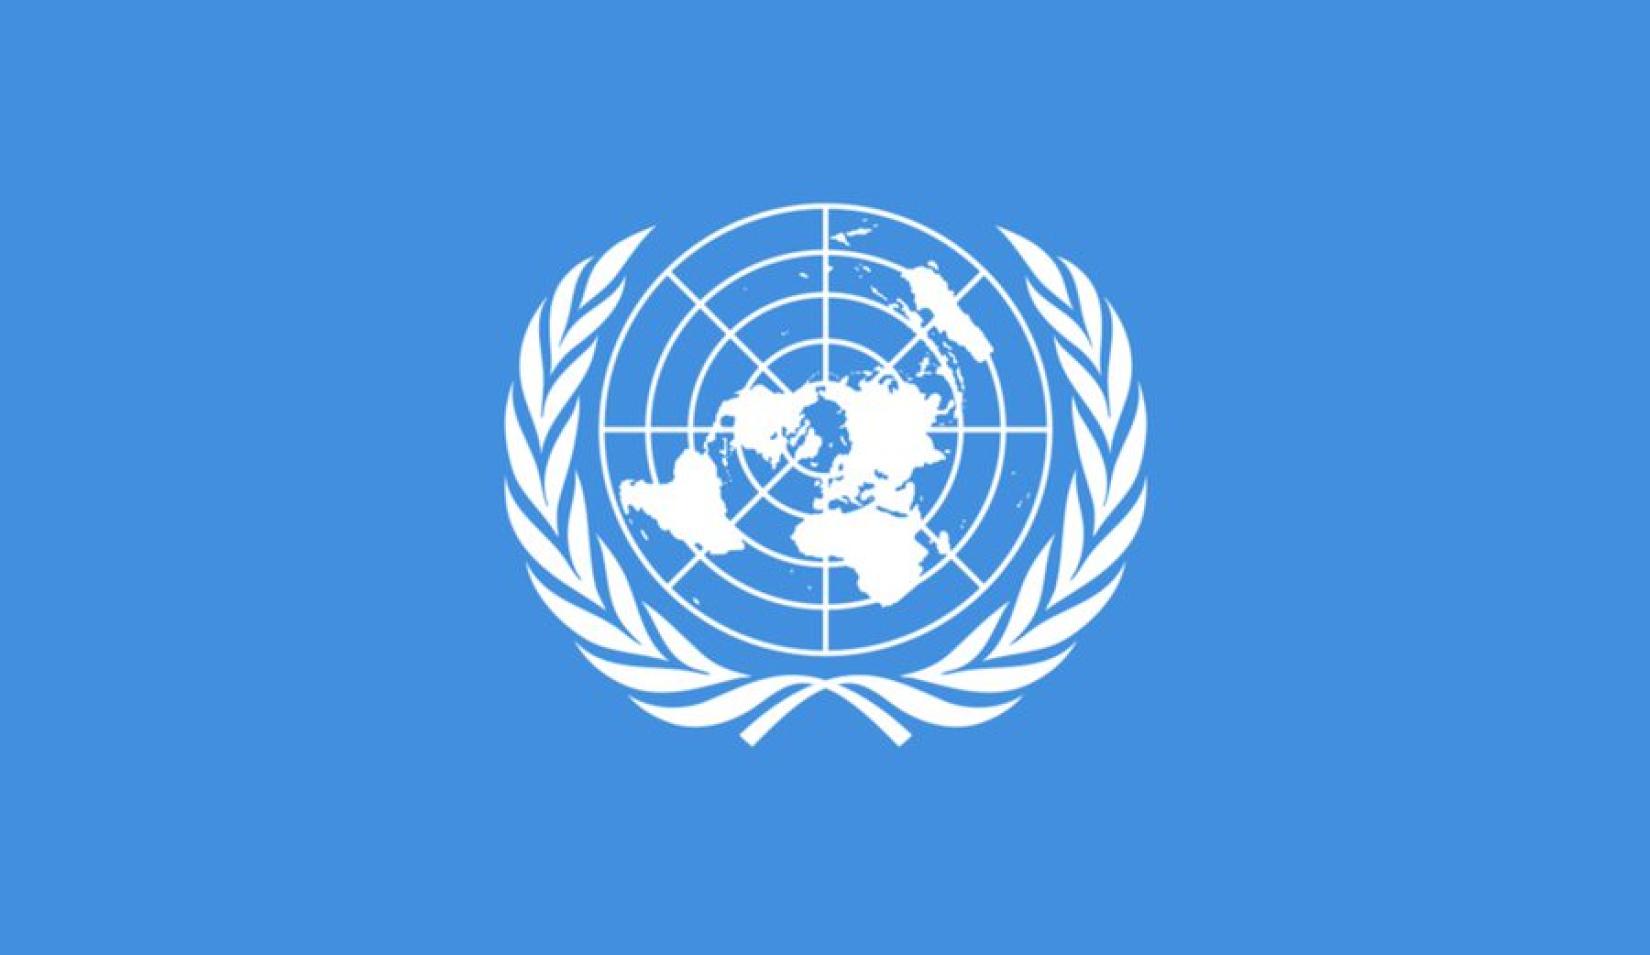 UN Emblem with blue background